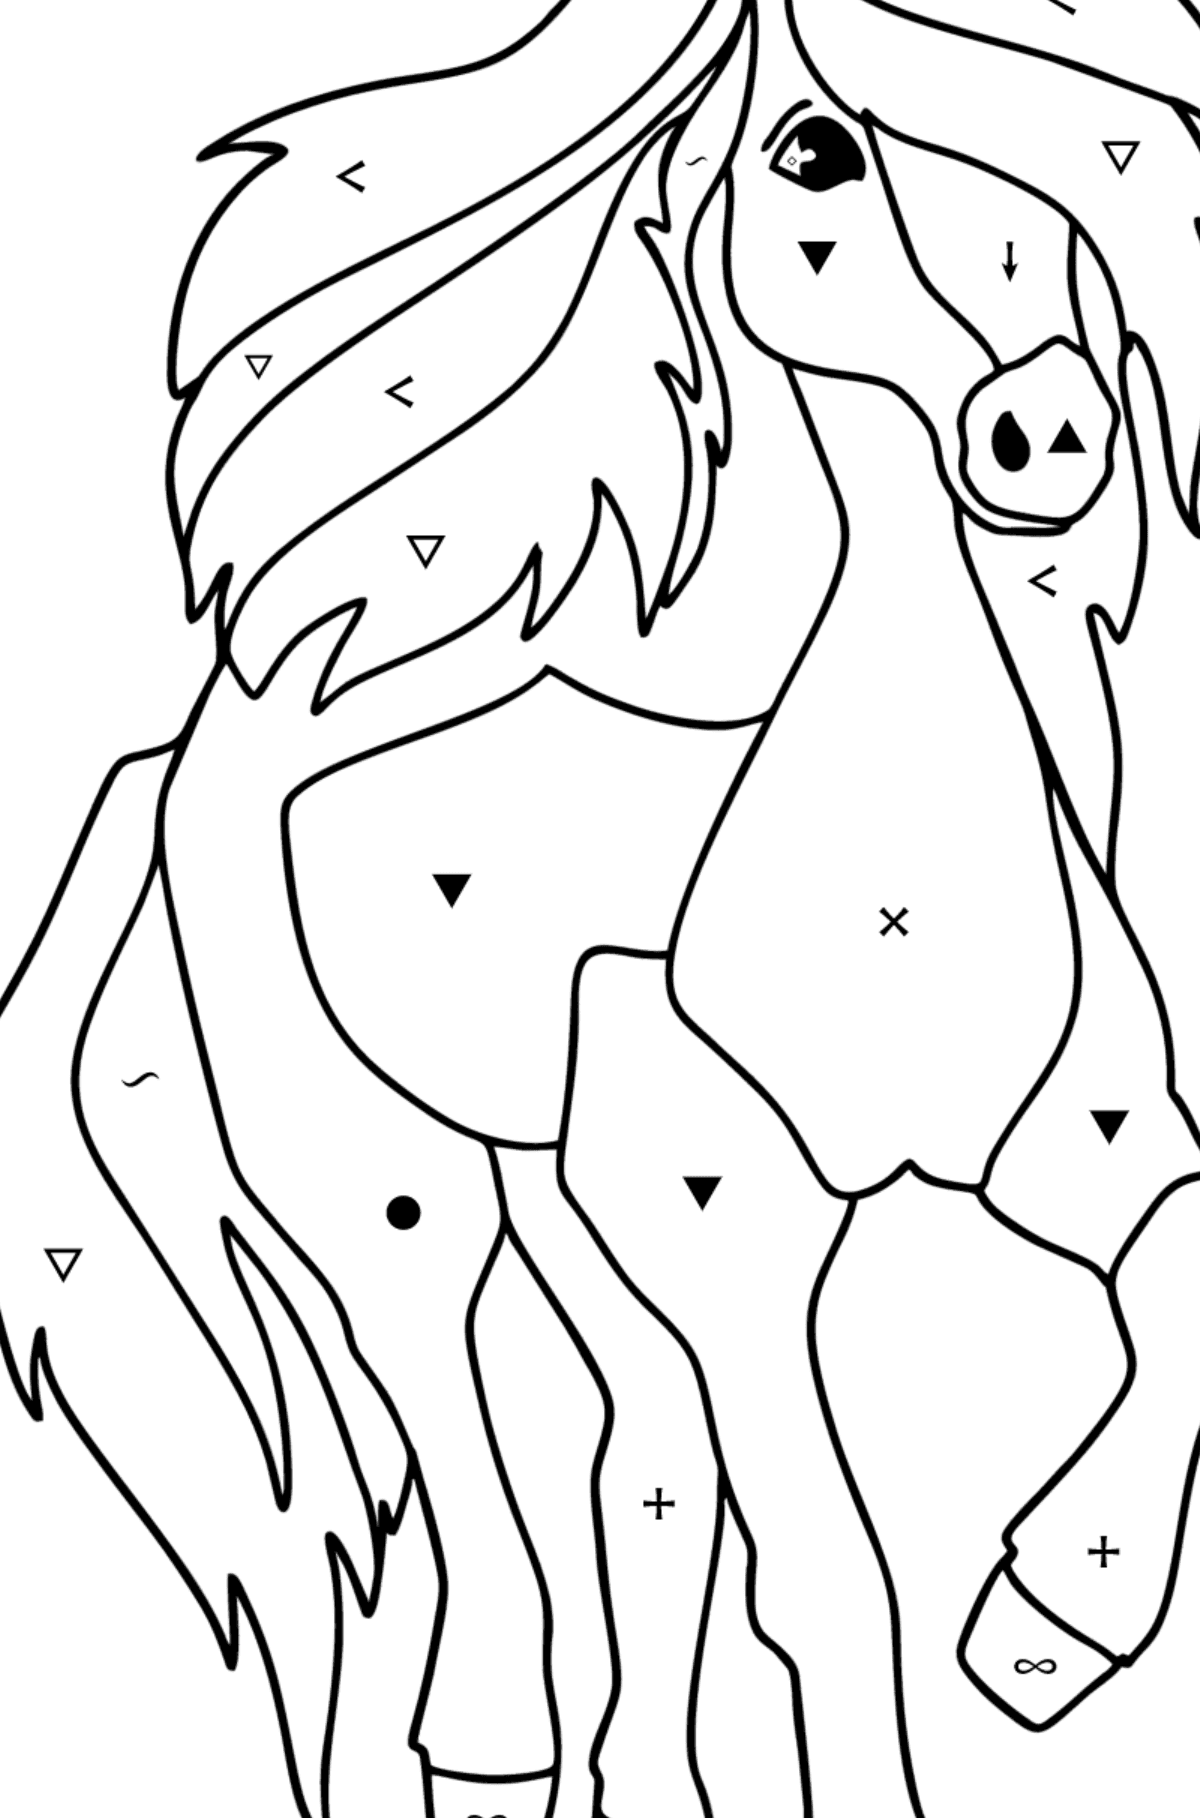 Målarbild Enkel häst - Färgläggning efter symboler För barn